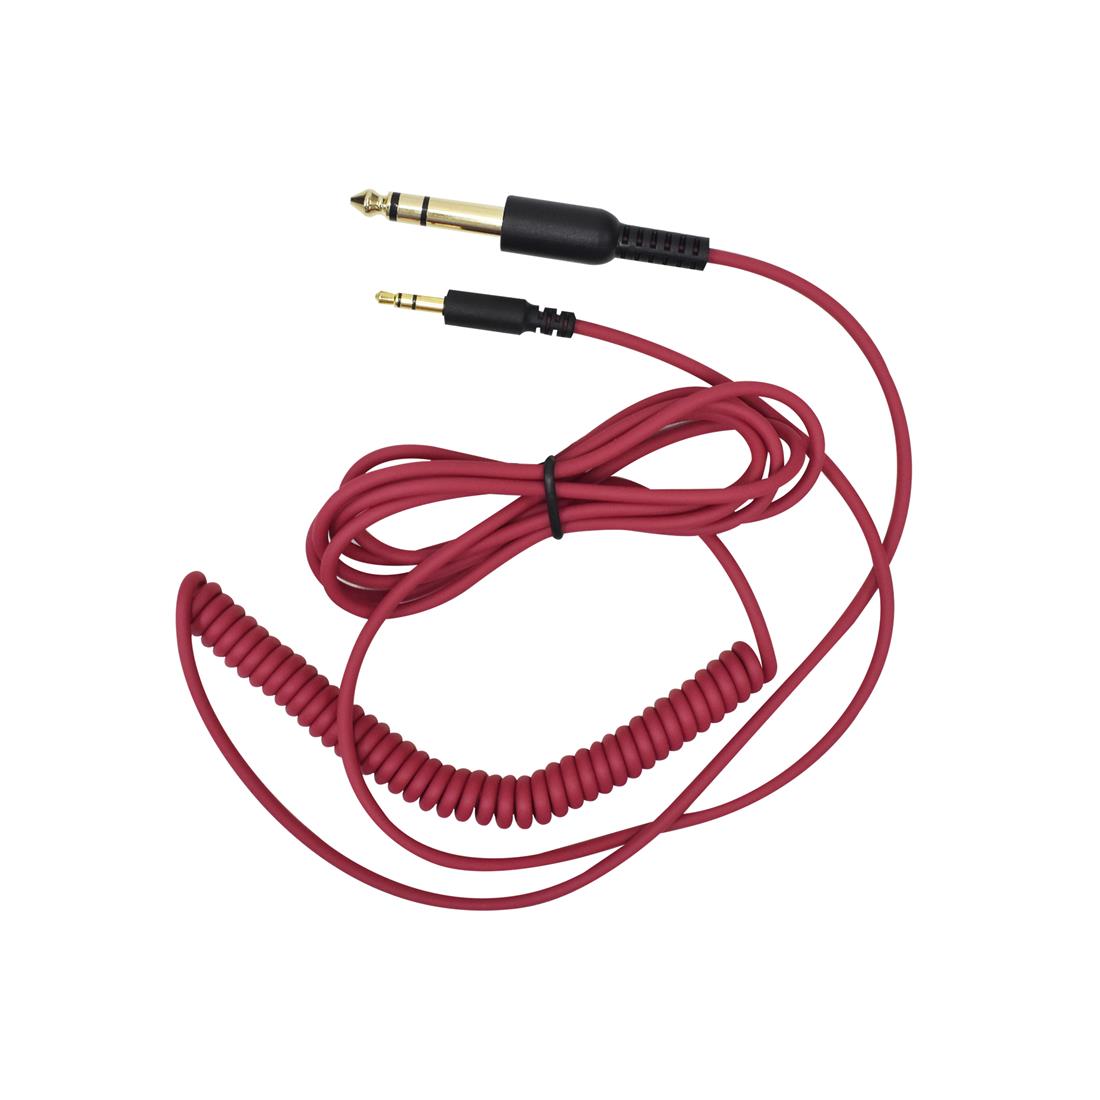  Audífonos profesionales con cable. : Electrónica